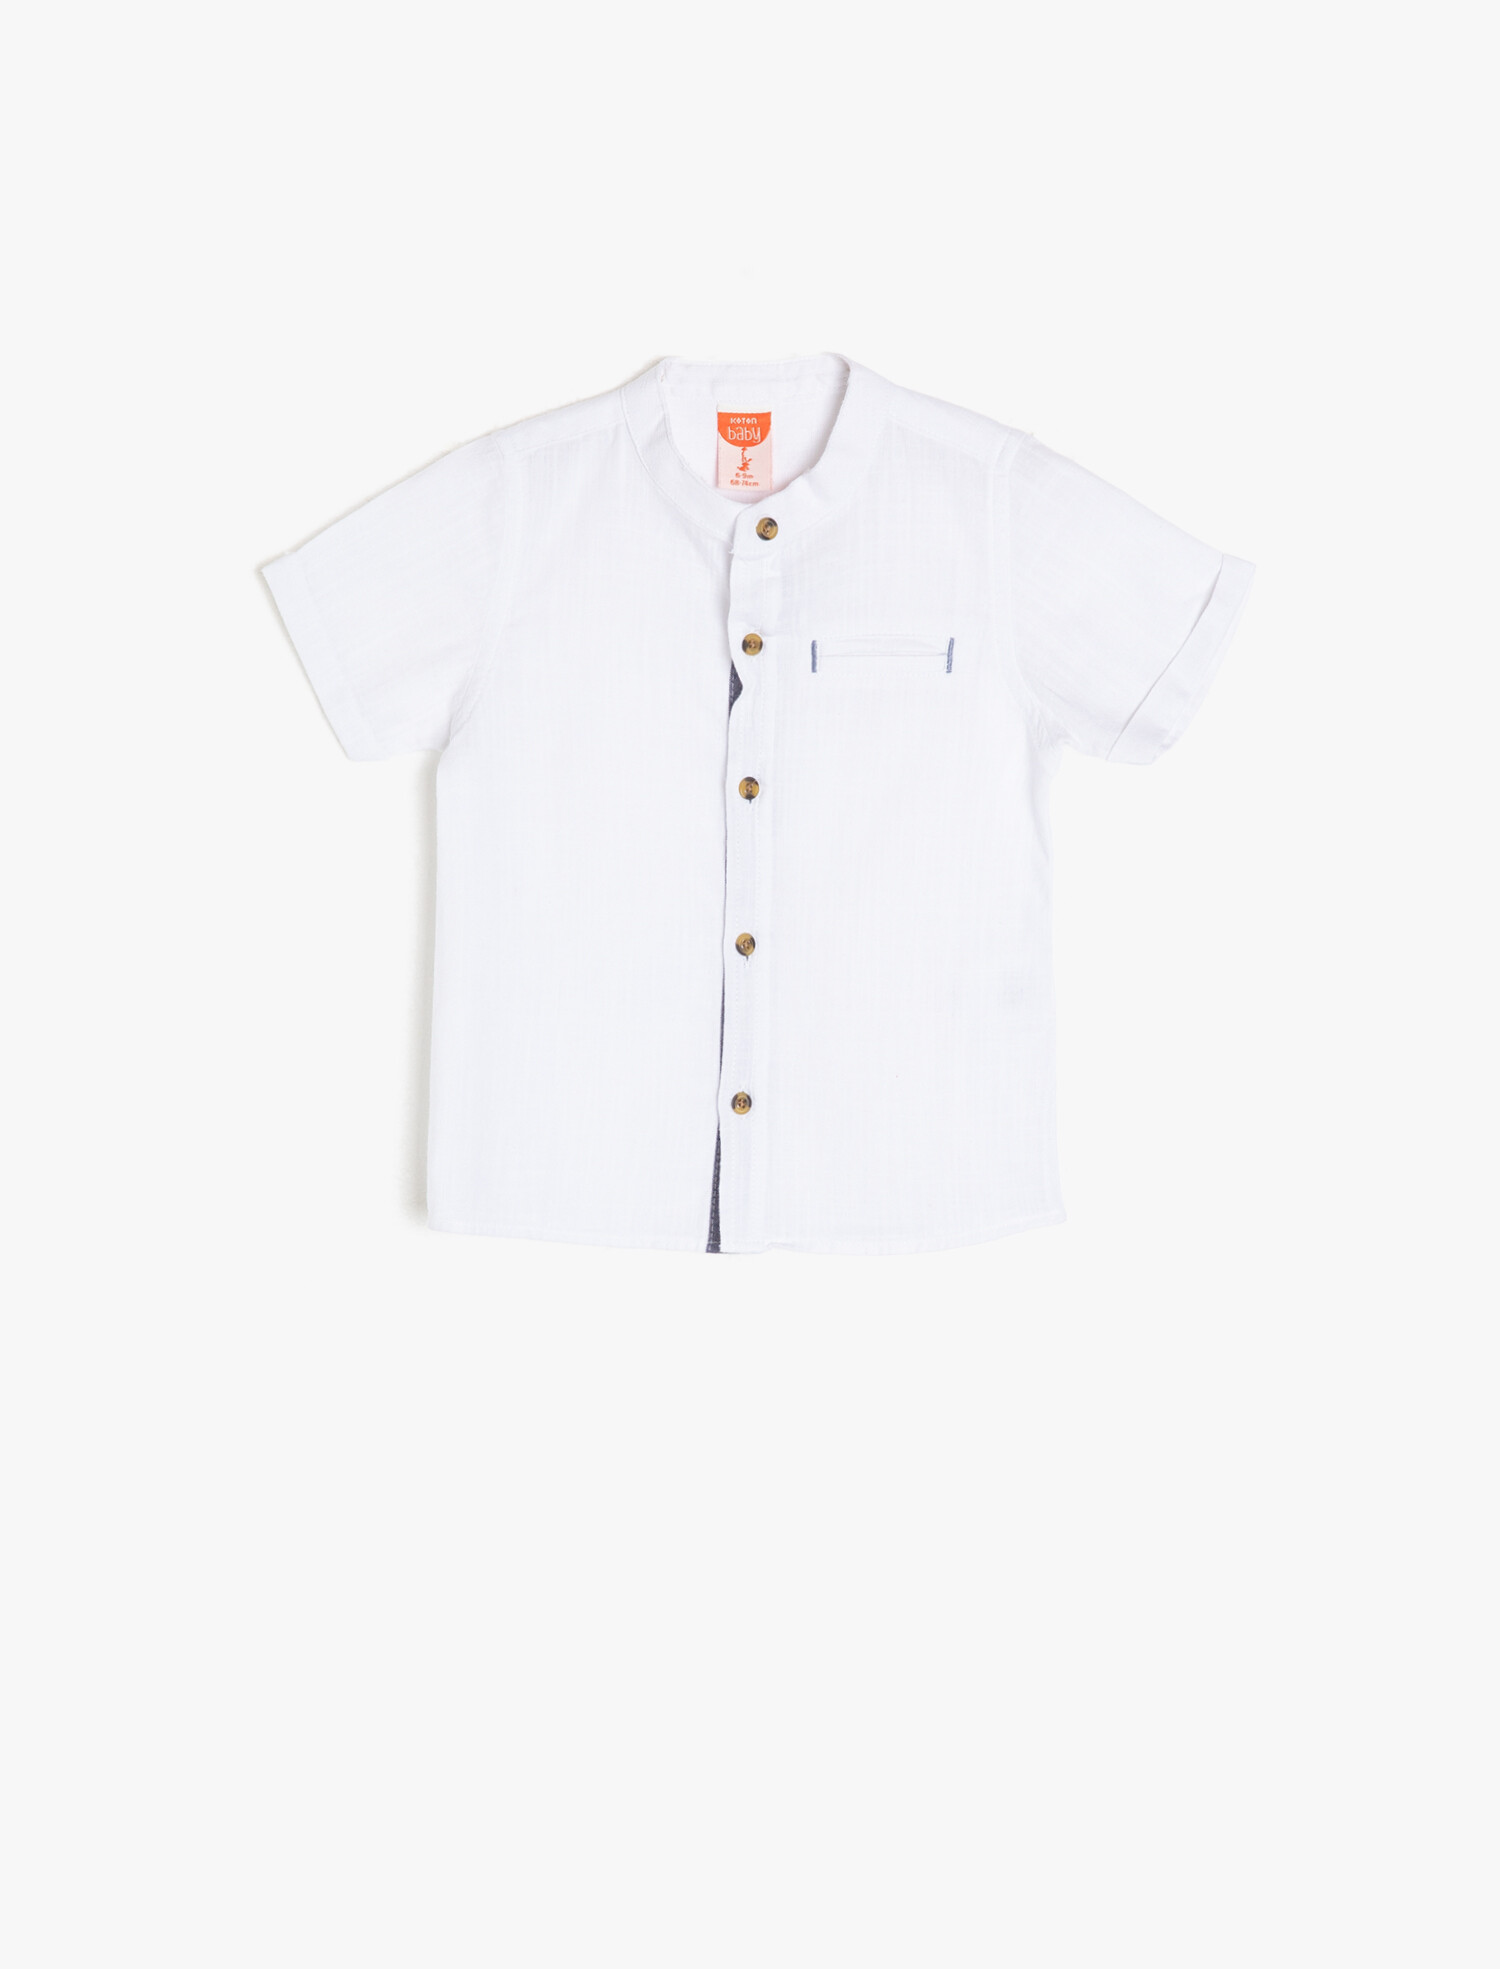 پیراهن پسرانه زیر سه سال سفید نخی برند کوتون Koton